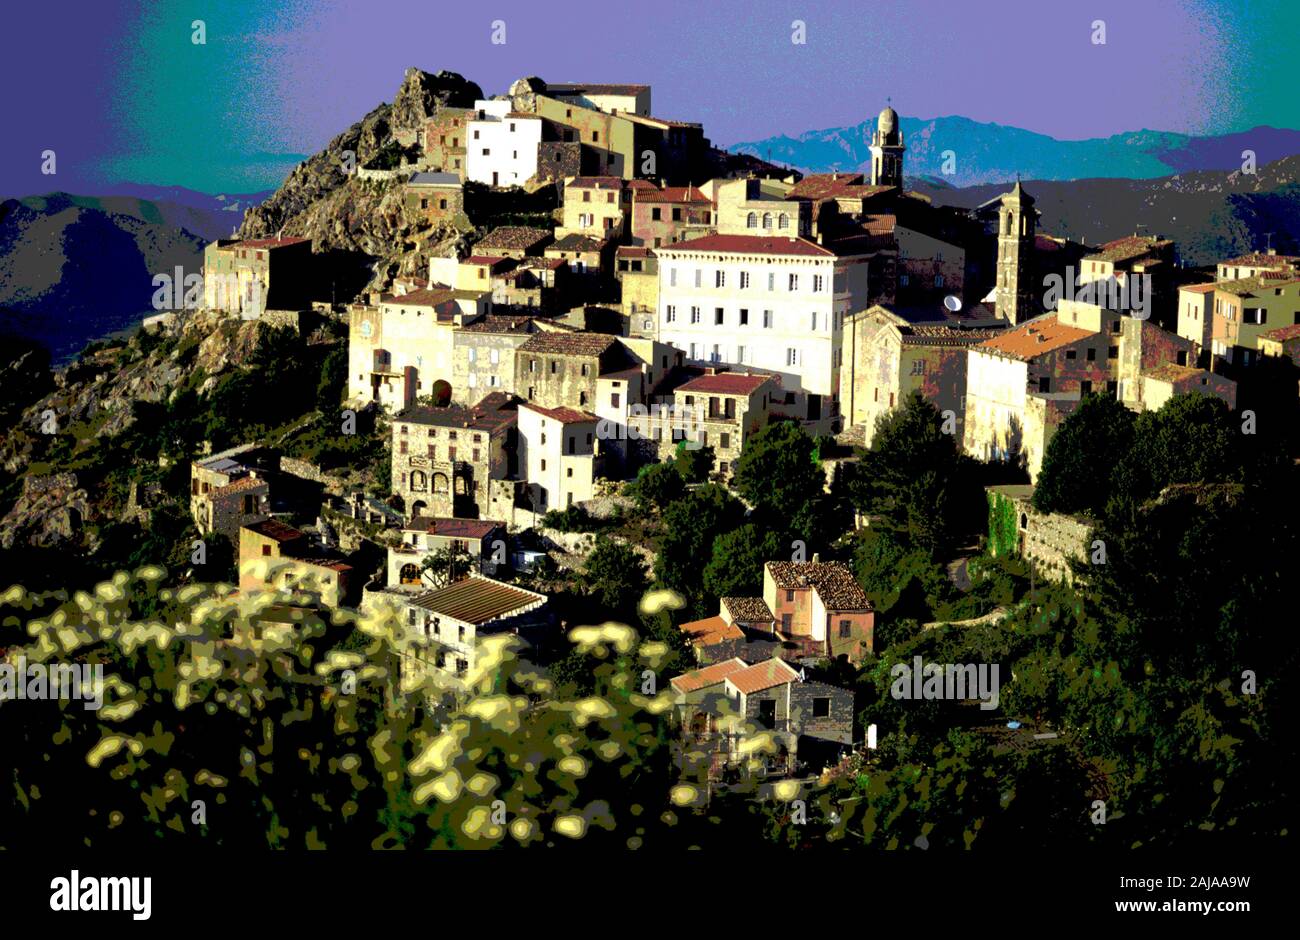 The hilltop village of Speloncato in north Corsica Stock Photo